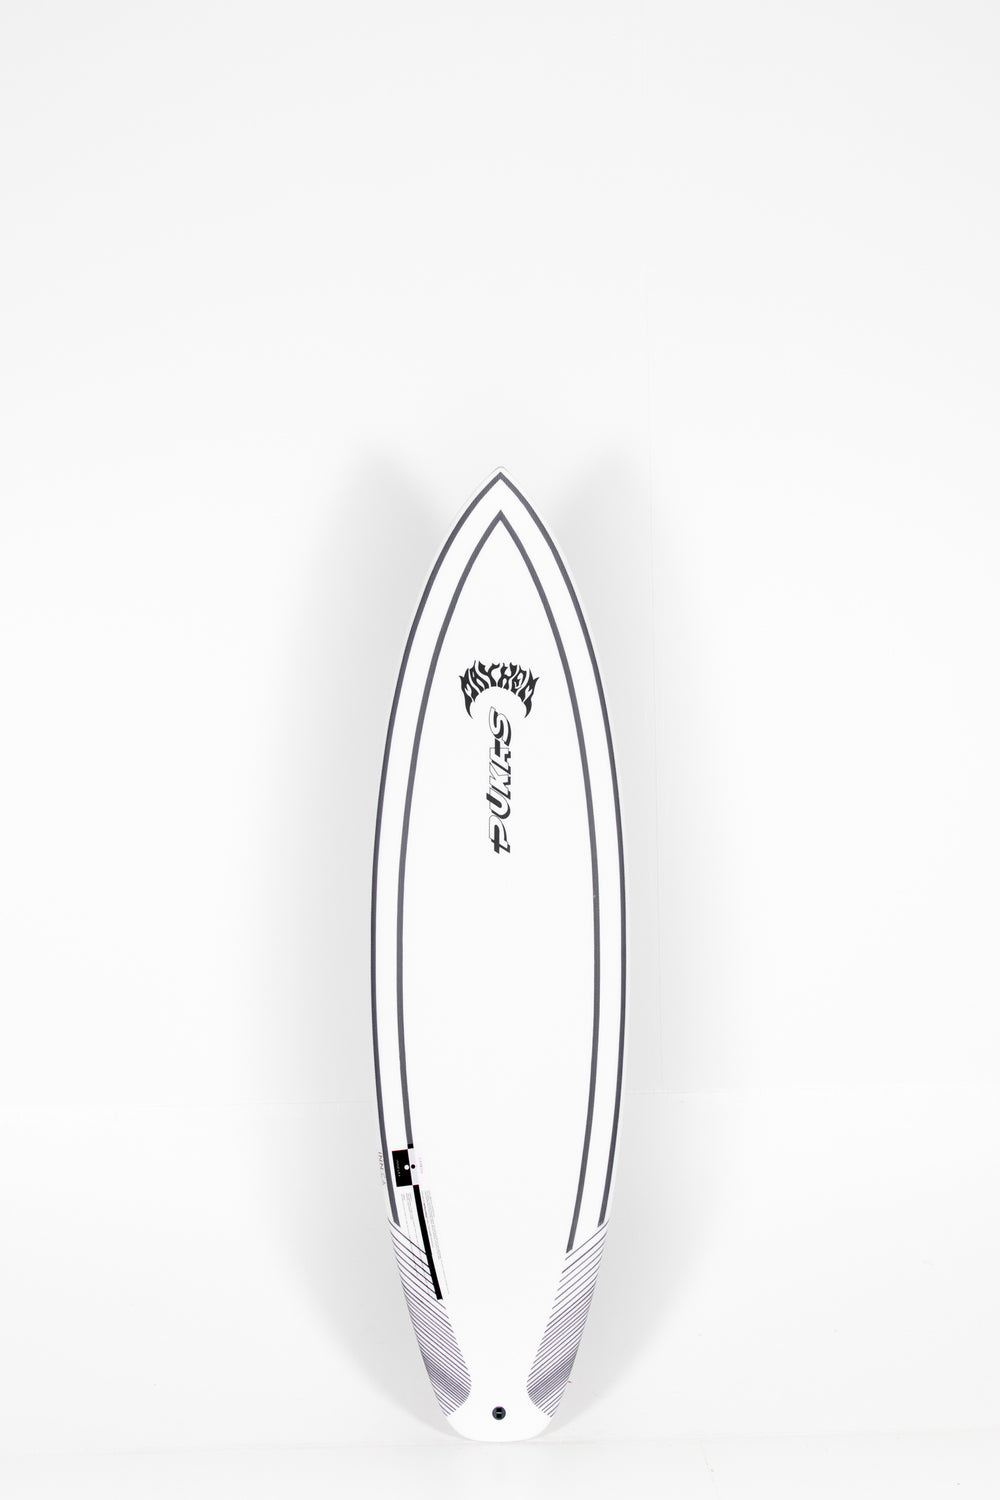 Pukas Surf Shop - Pukas Surfboard - INN·CA Tech - THE LINK 2  by Matt Biolos - 6'2” x 20,38